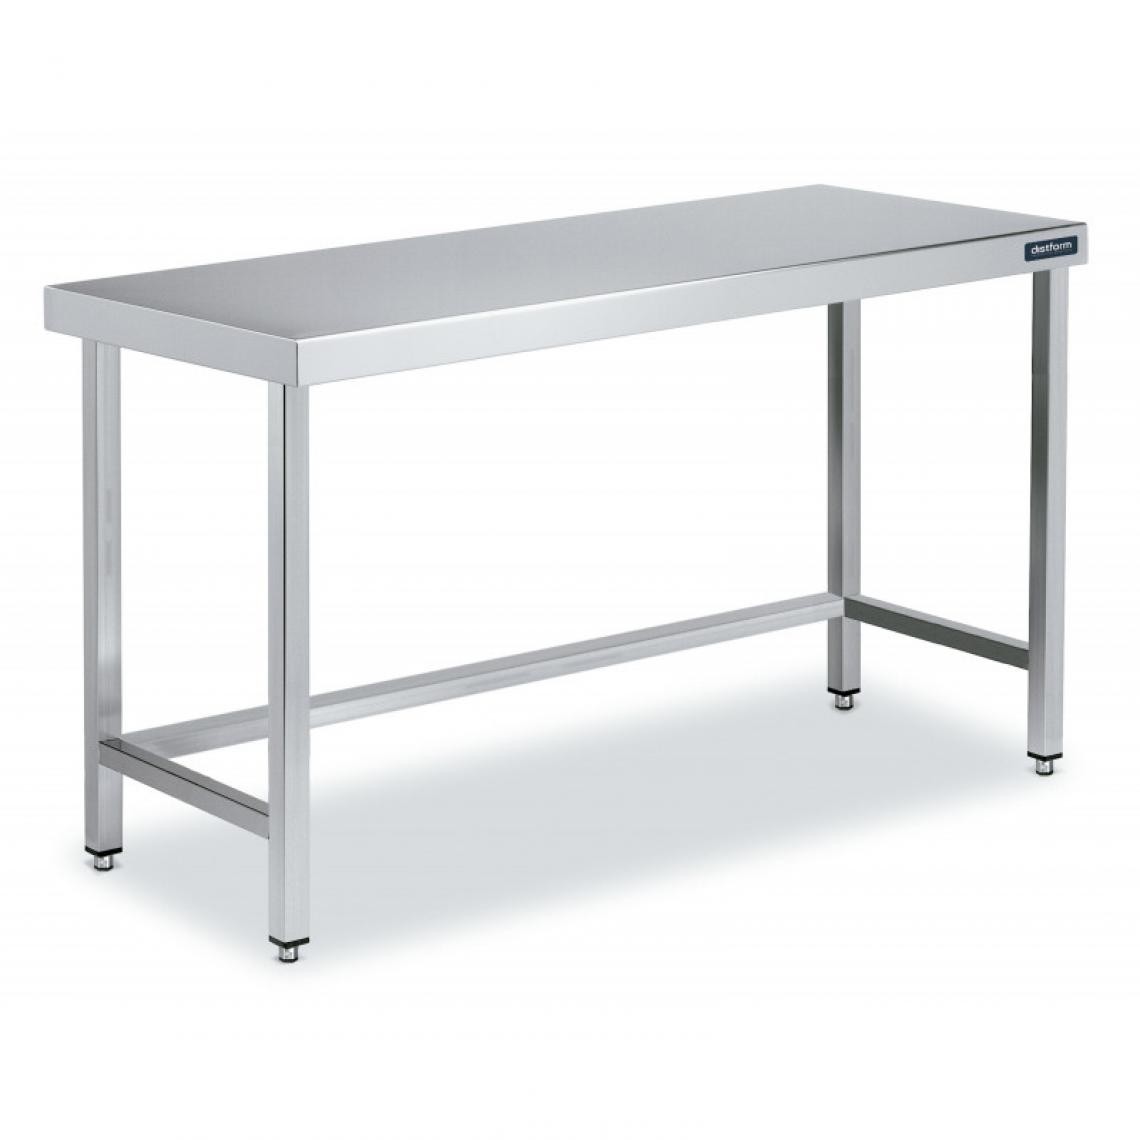 DISTFORM - Table Inox de Travail Centrale avec Renforts - Gamme 550 - Distform - Acier inoxydable2000x550 - Tables à manger